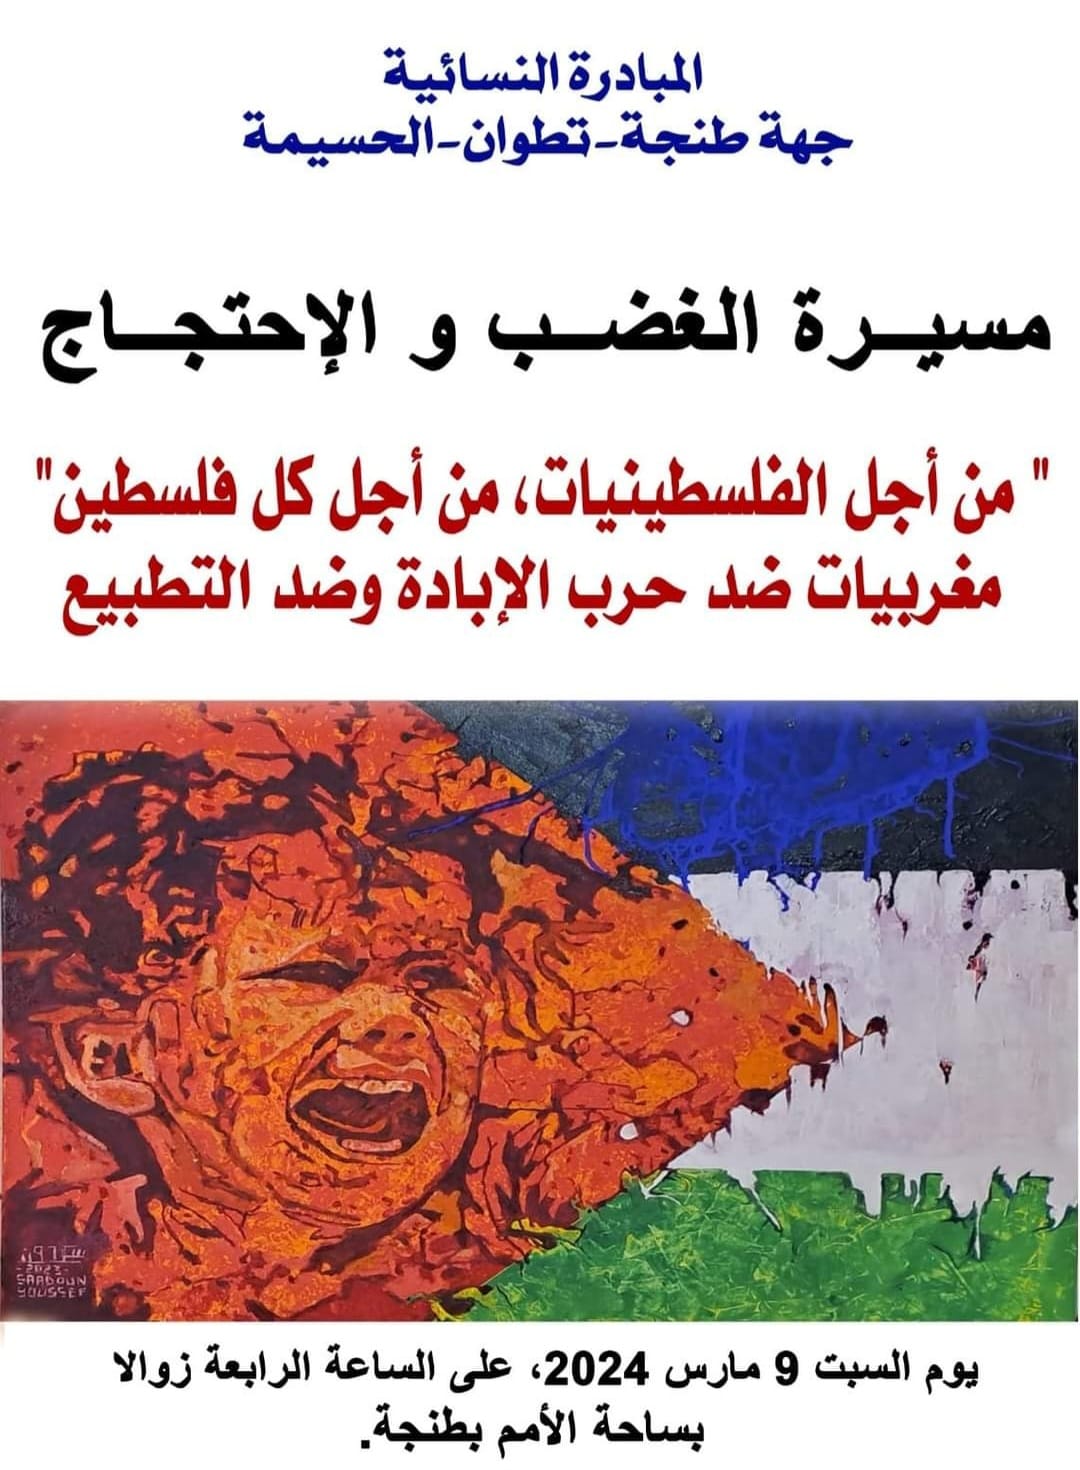  » مغربيات مع الوقف الفوري لحرب الإبادة الجماعية وضد التطبيع « 